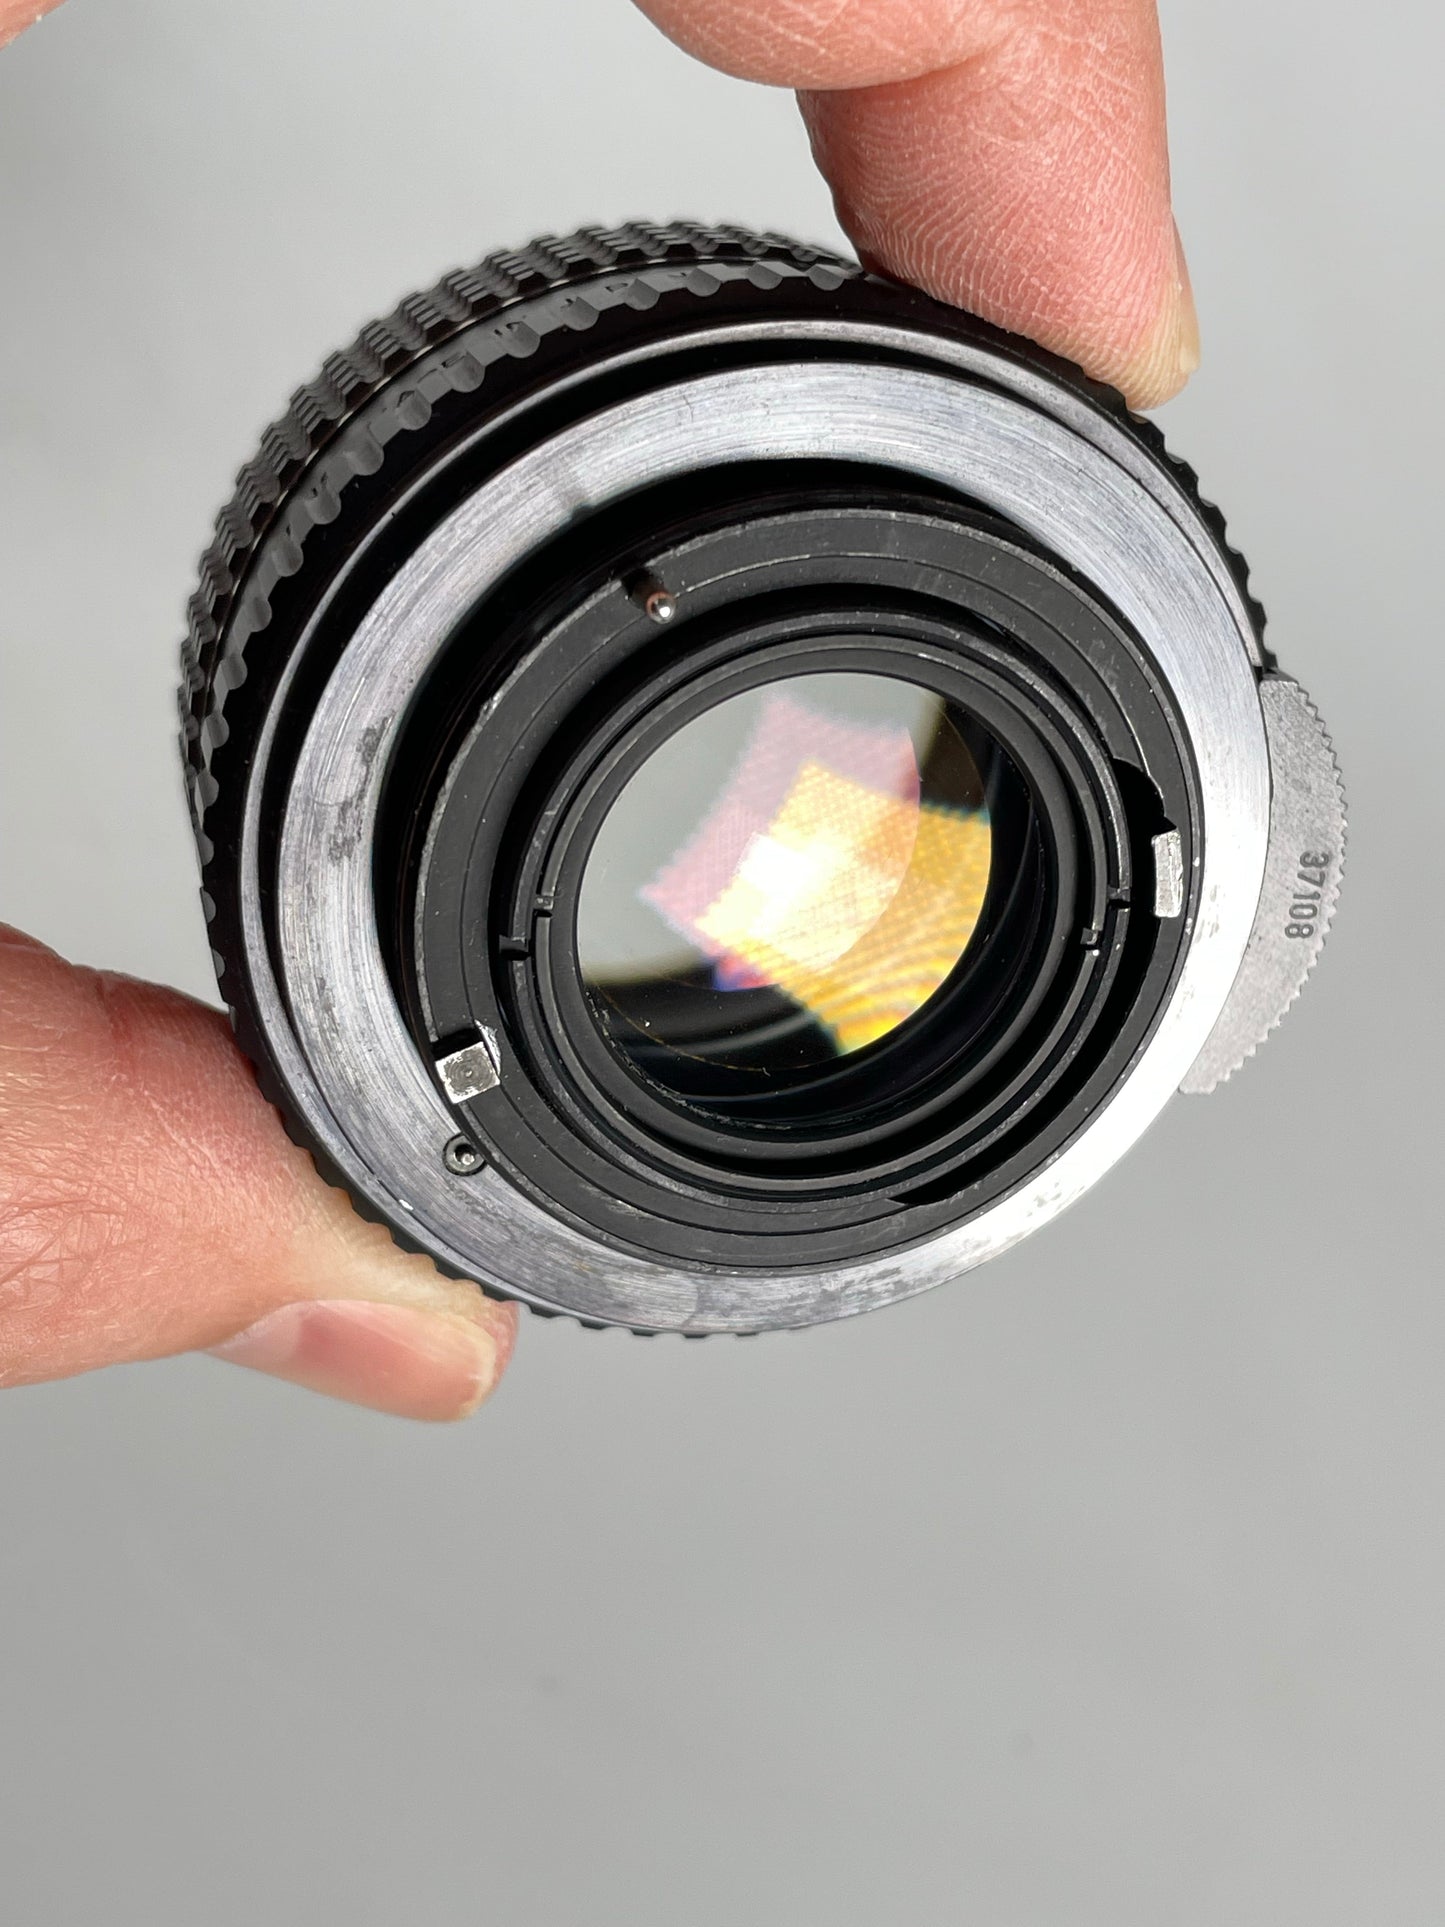 Pentax SMC 55mm f1.8 Prime Manual Focus Lens M42